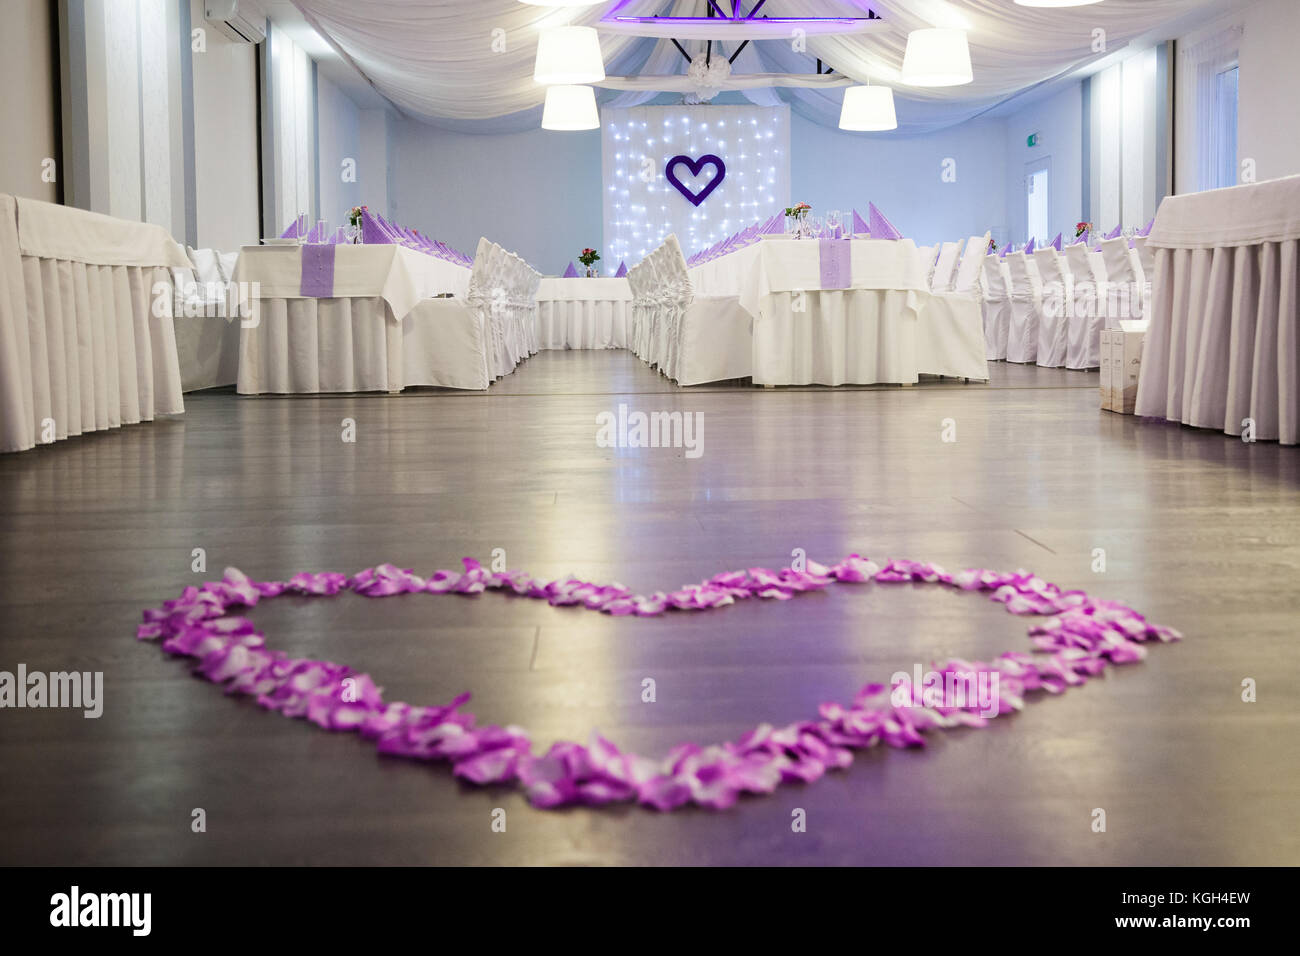 Foto di matrimonio ricevimento sala decorata in viola e bianco colori. in primo piano vi è una pista da ballo con una rosa di petali di fiori forma di cuore . d Foto Stock